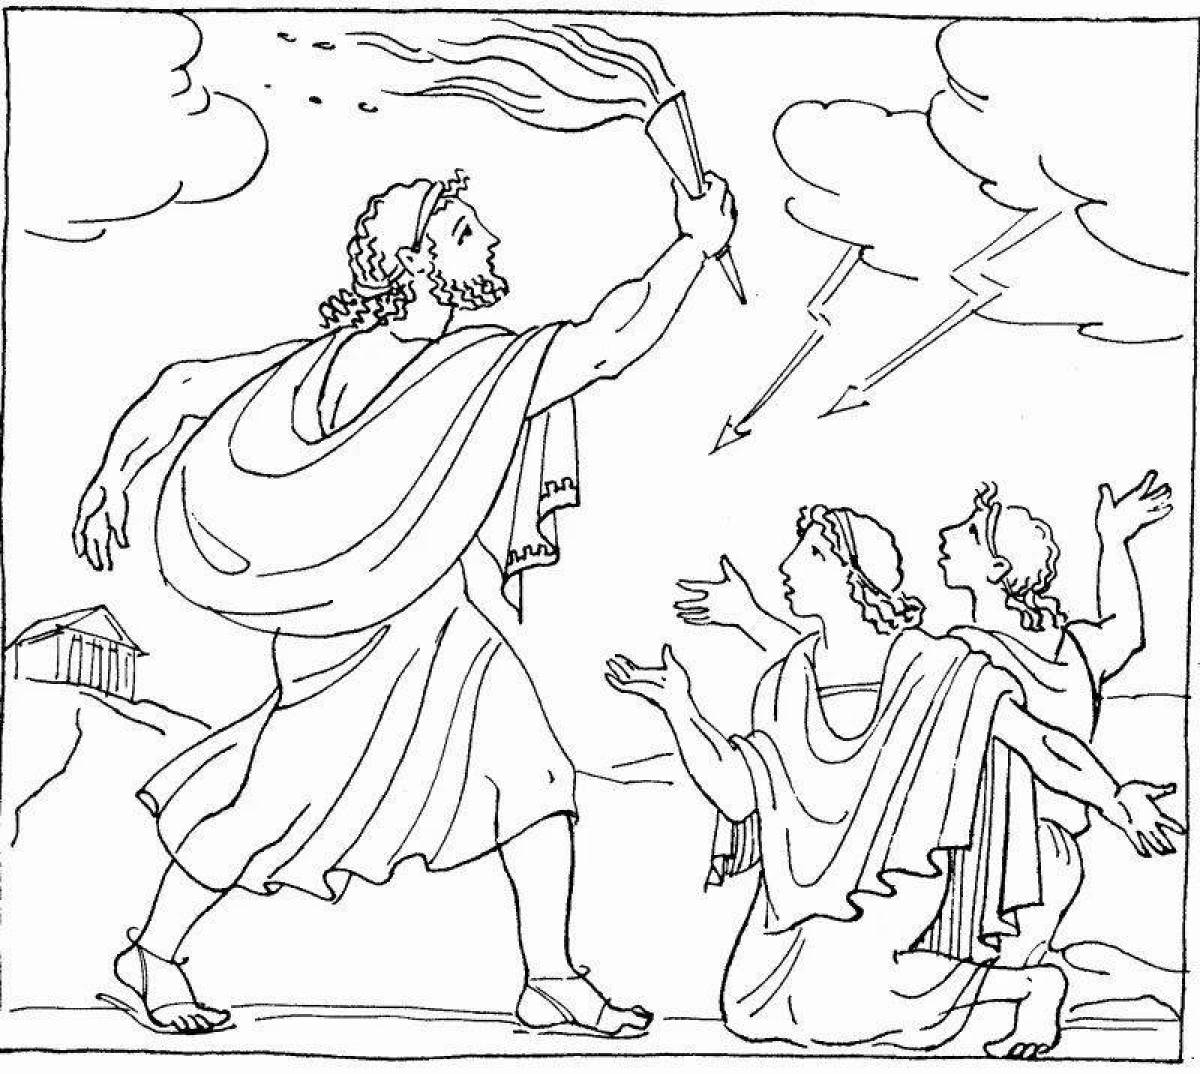 Миф древней Греции о Прометее рисунок